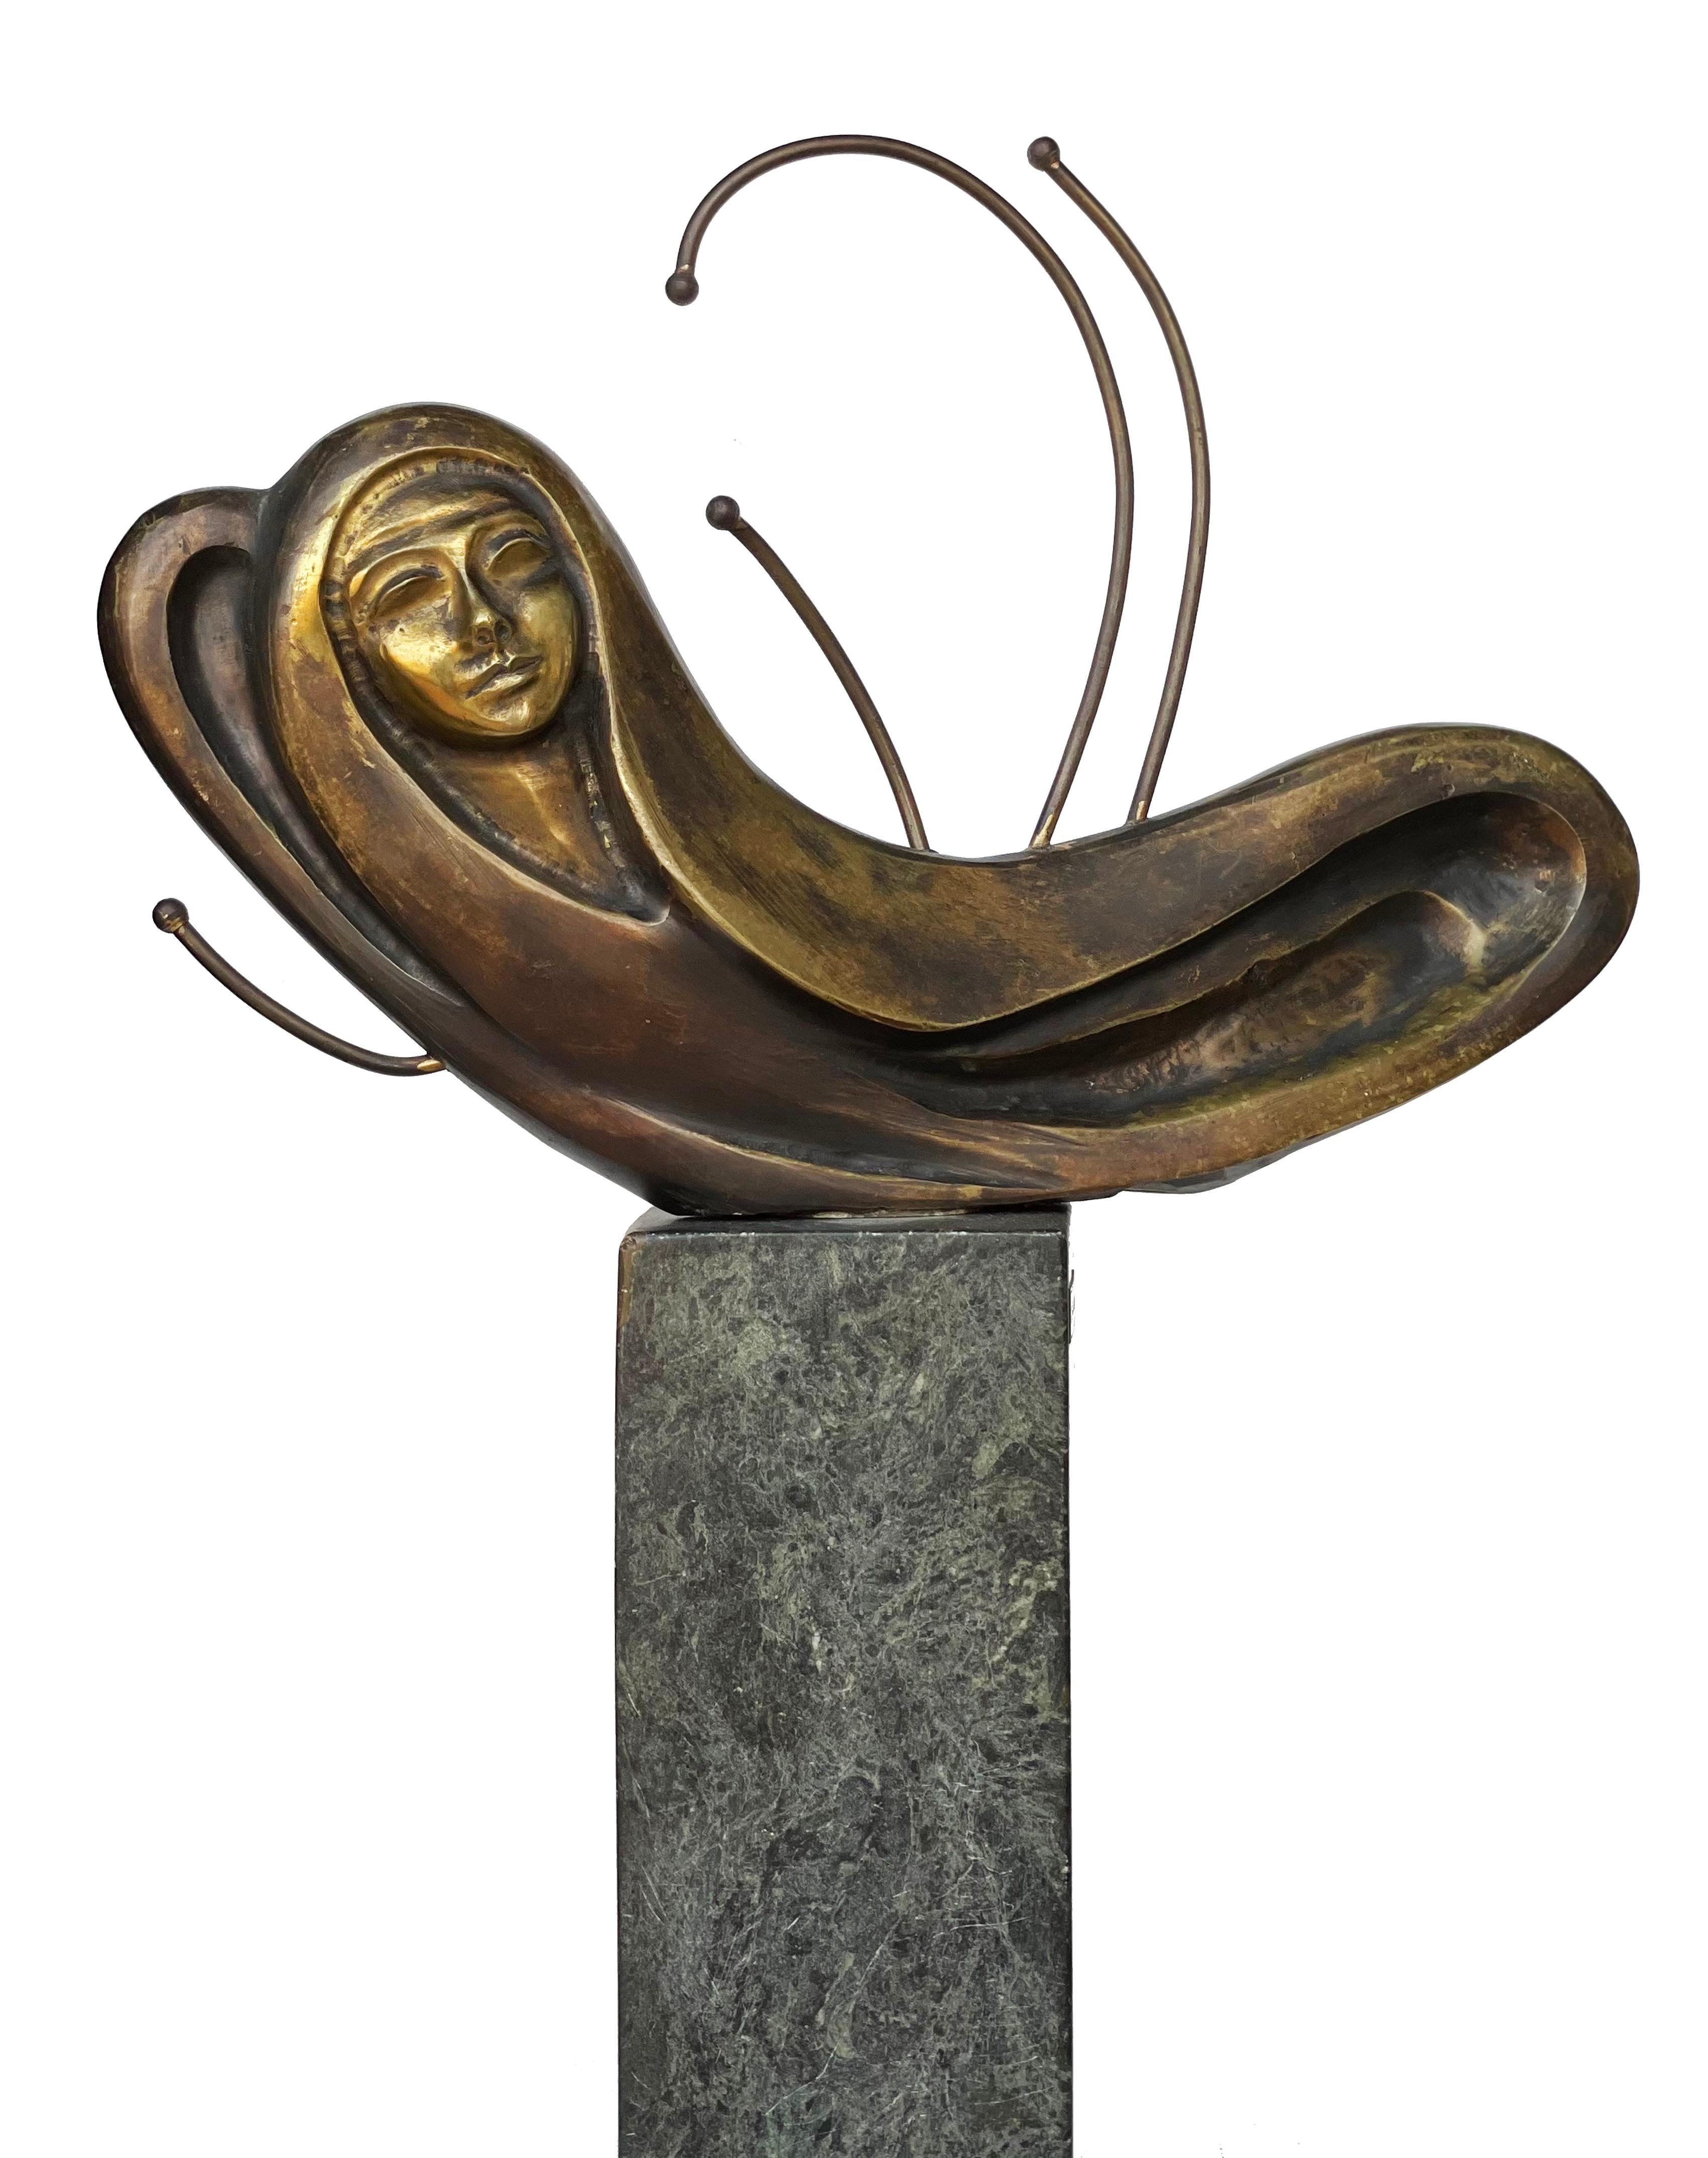 „Chrysalis“ Skulptur aus Bronze und Marmor 19" x 15" in von Ibrahim Abd Elmalak

Chrysalis, 2005
Bronze und Marmor 
48 x 39 cm, Signiert und datiert


Skulpturen, die zumeist seine charakteristischen Figuren mit weiblichen Formen und Gefühlen